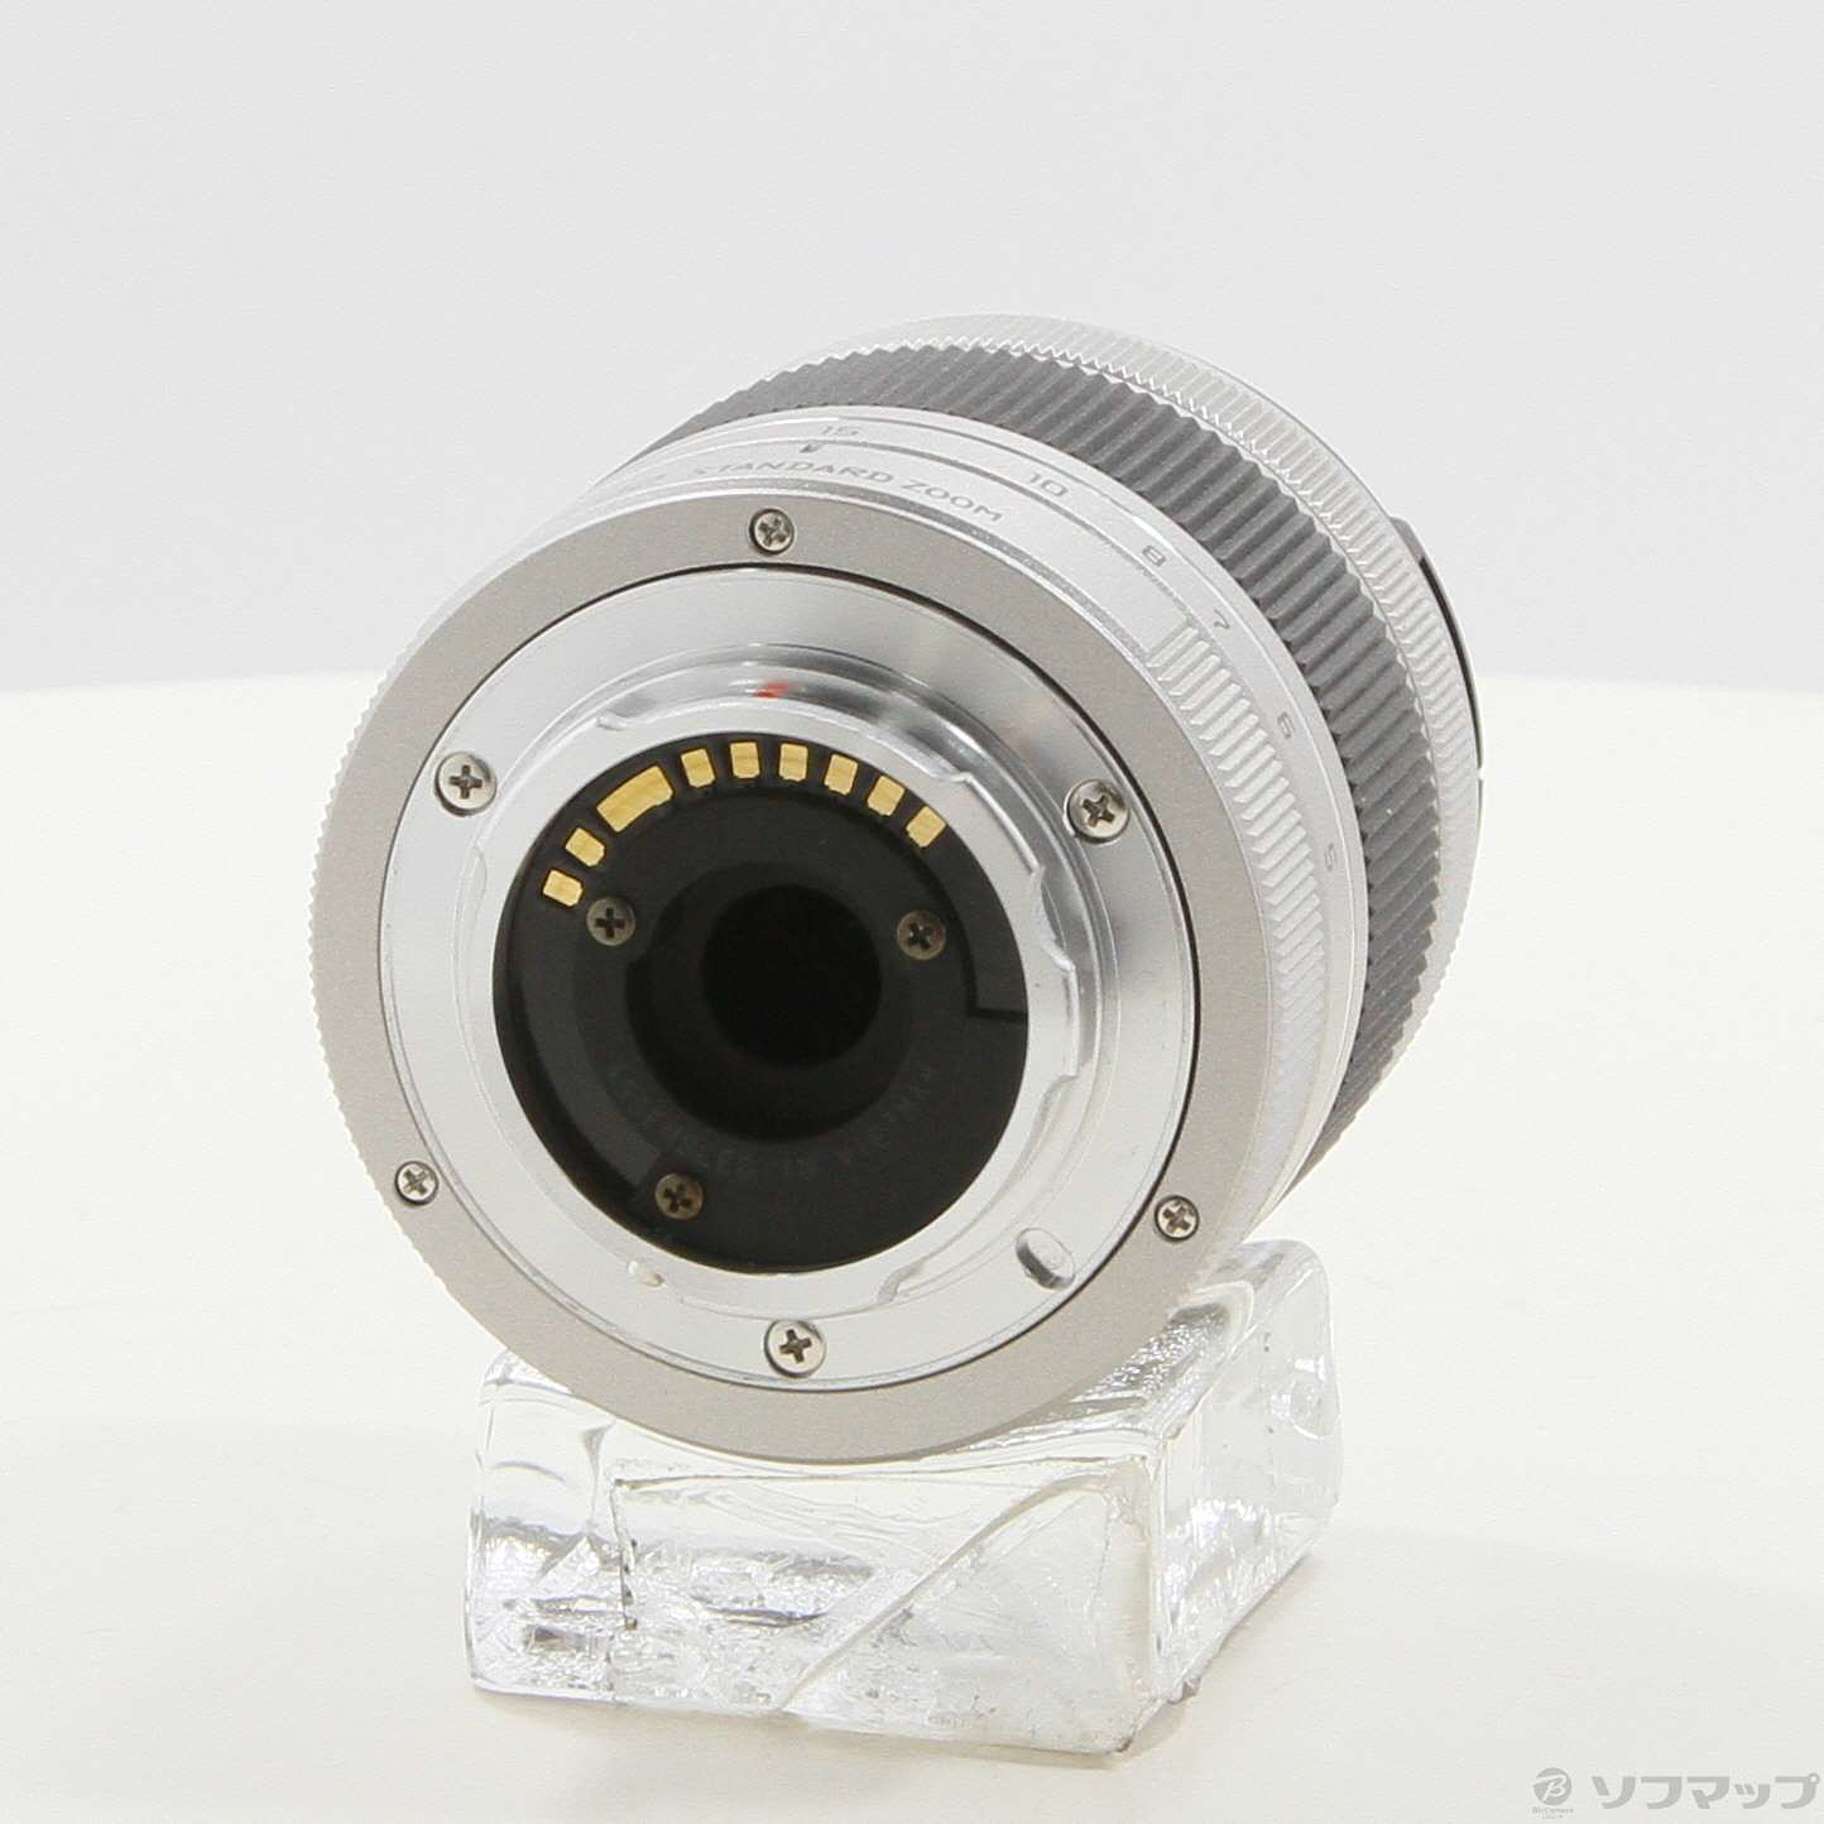 PENTAX 02 STANDARD ZOOM (レンズ) (Q) 5-15mm F2.8-4.5